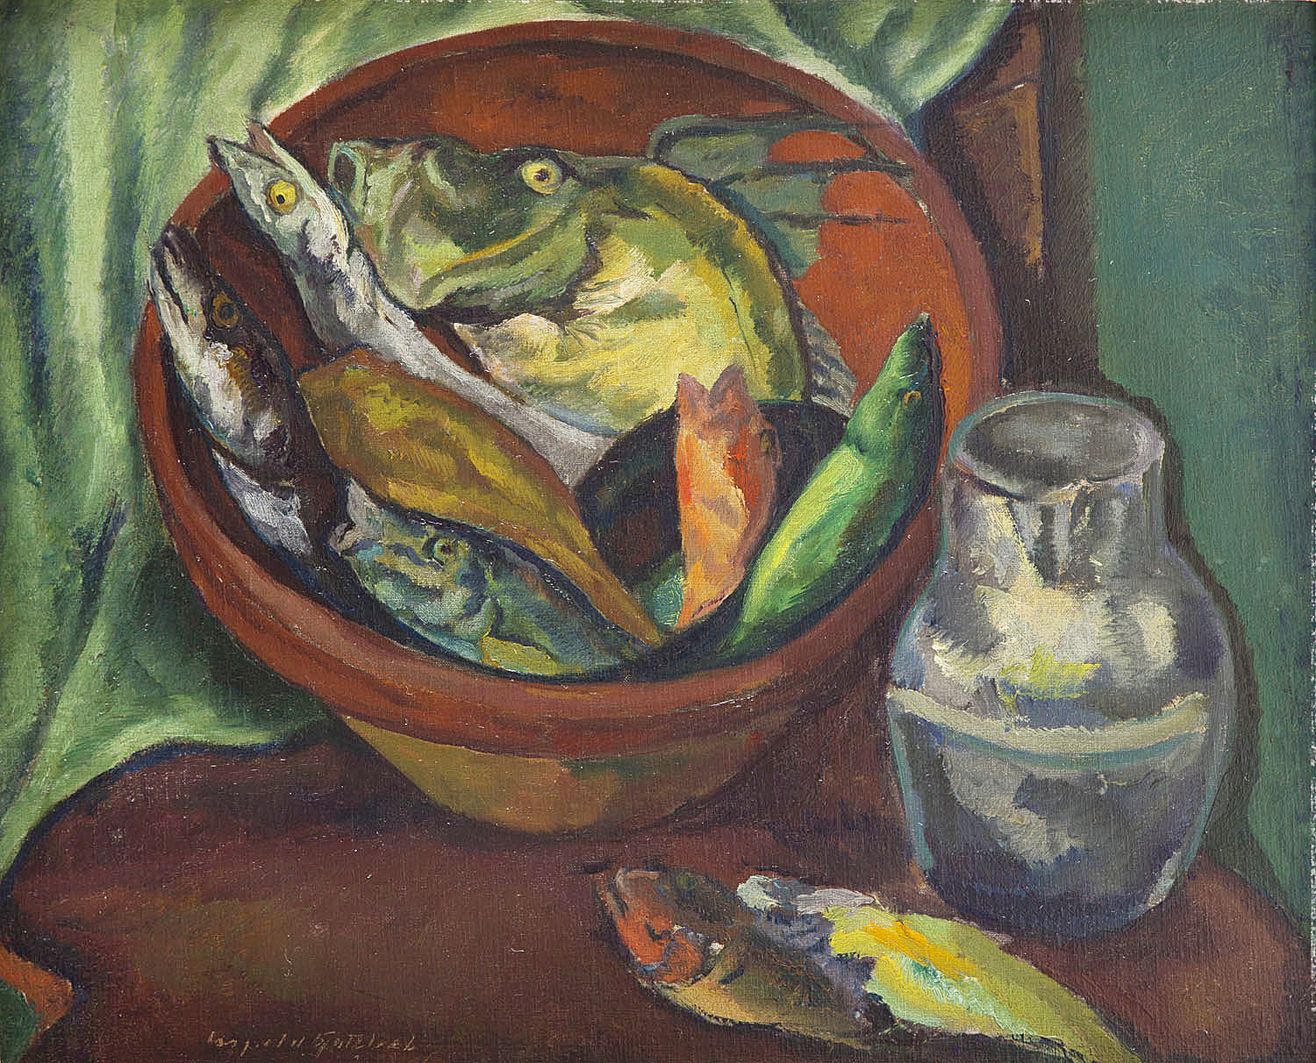 Леопольд Ґоттліб. Натюрморт з рибою, 1925; олія, полотно